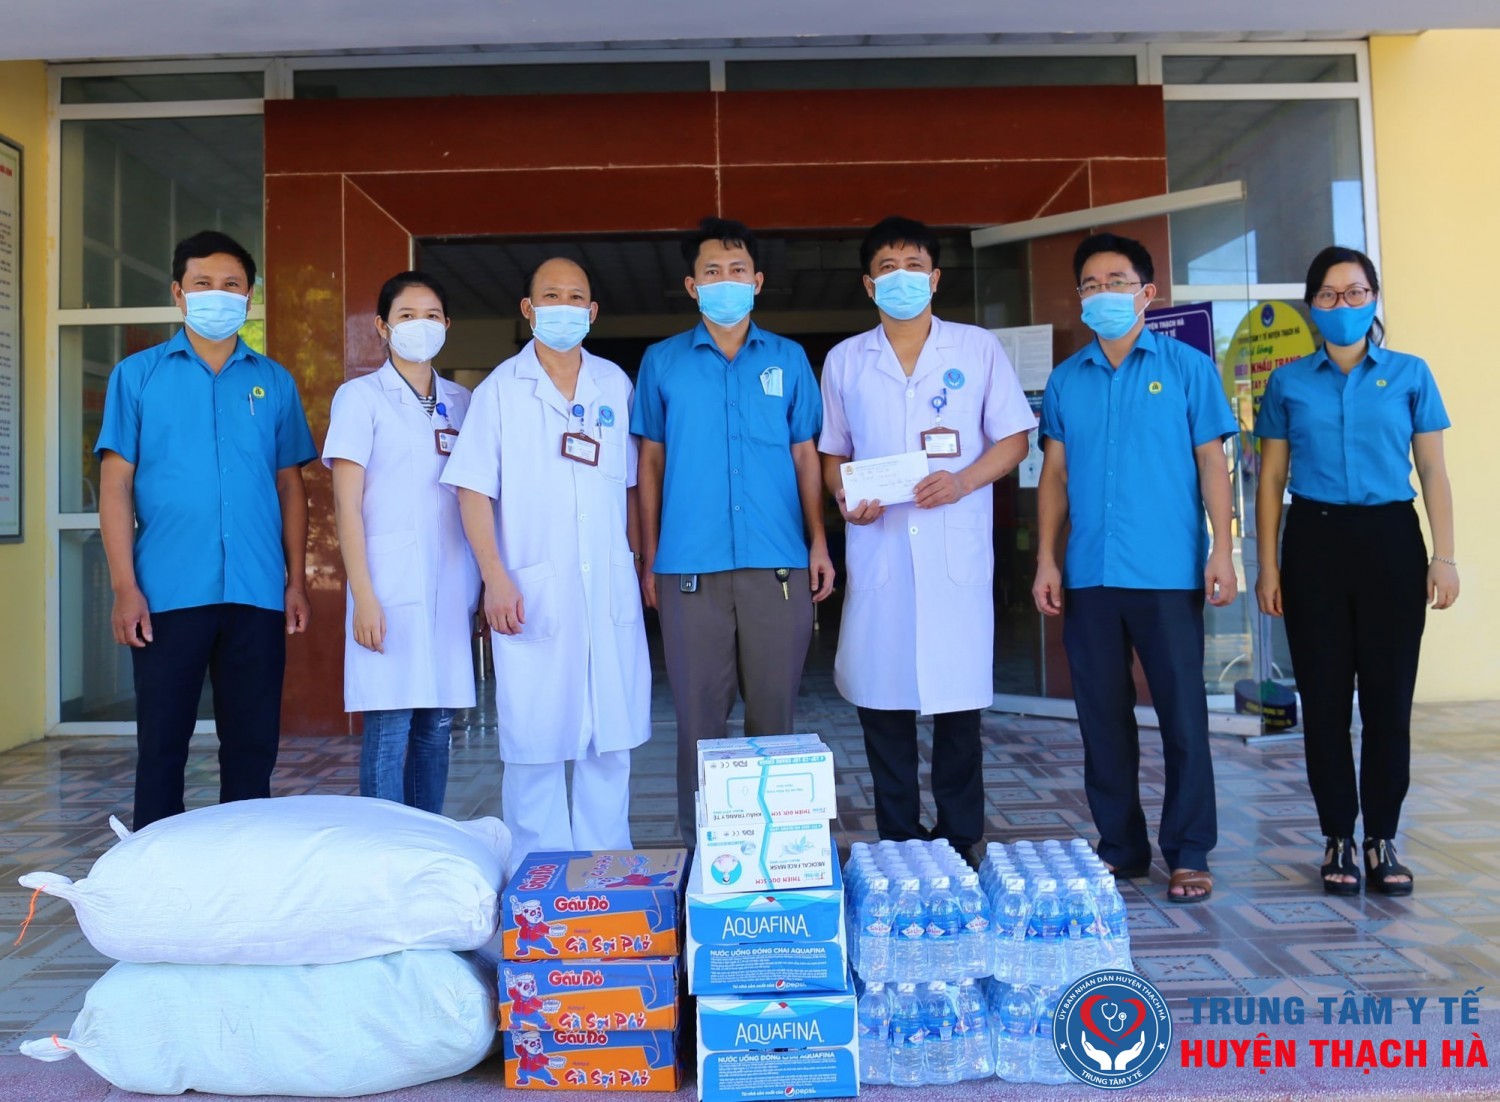 Liên đoàn lao động huyện Thạch Hà đại diện cho các Công đoàn trao 10 triệu đồng và một số nhu yếu phẩm thiết yếu hỗ trợ các cán bộ, đoàn viên Trung tâm Y tế huyện.